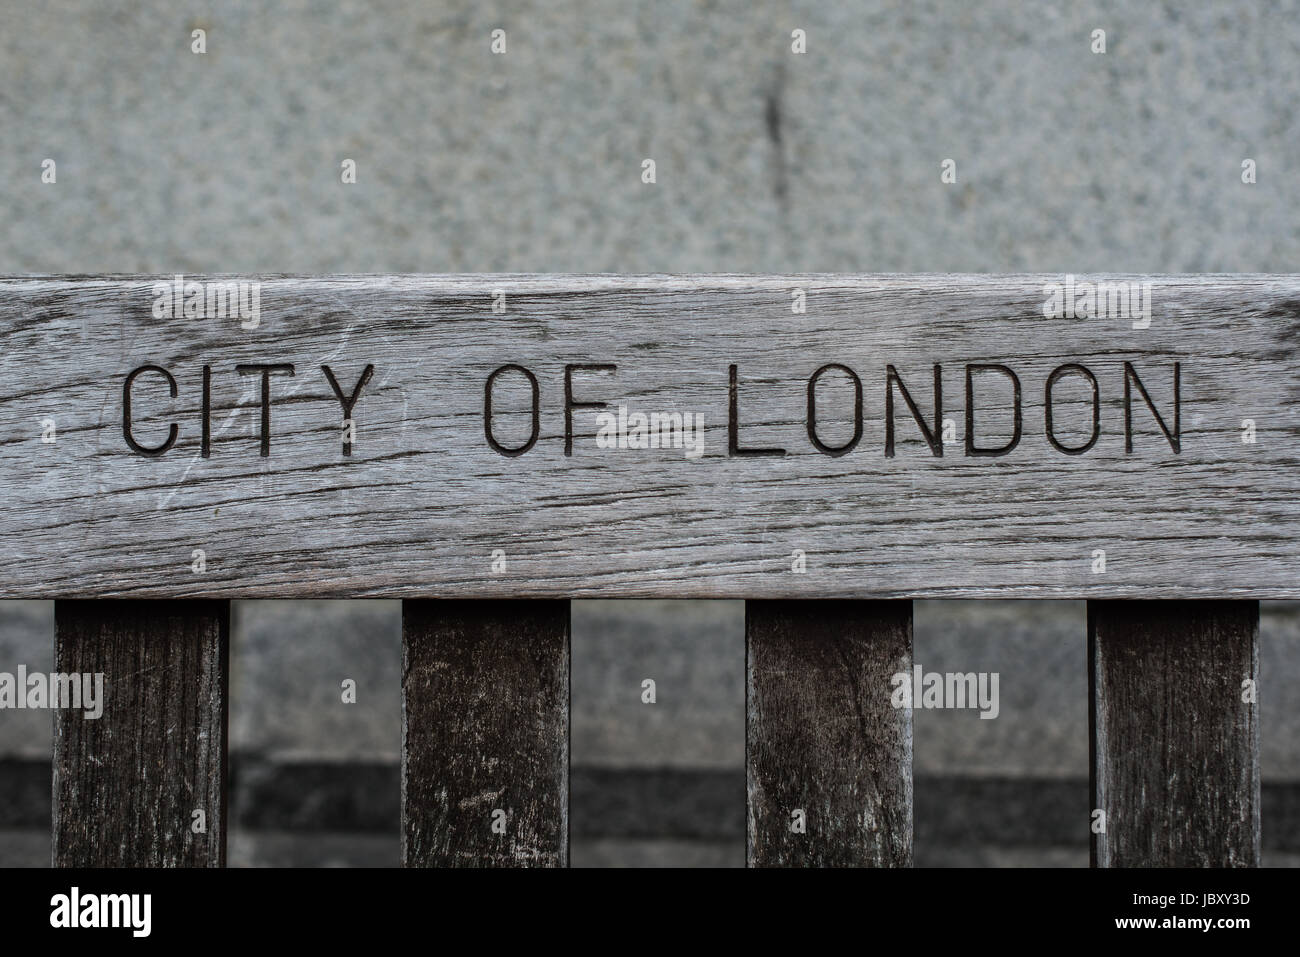 Ville de London gravée sur un banc Banque D'Images